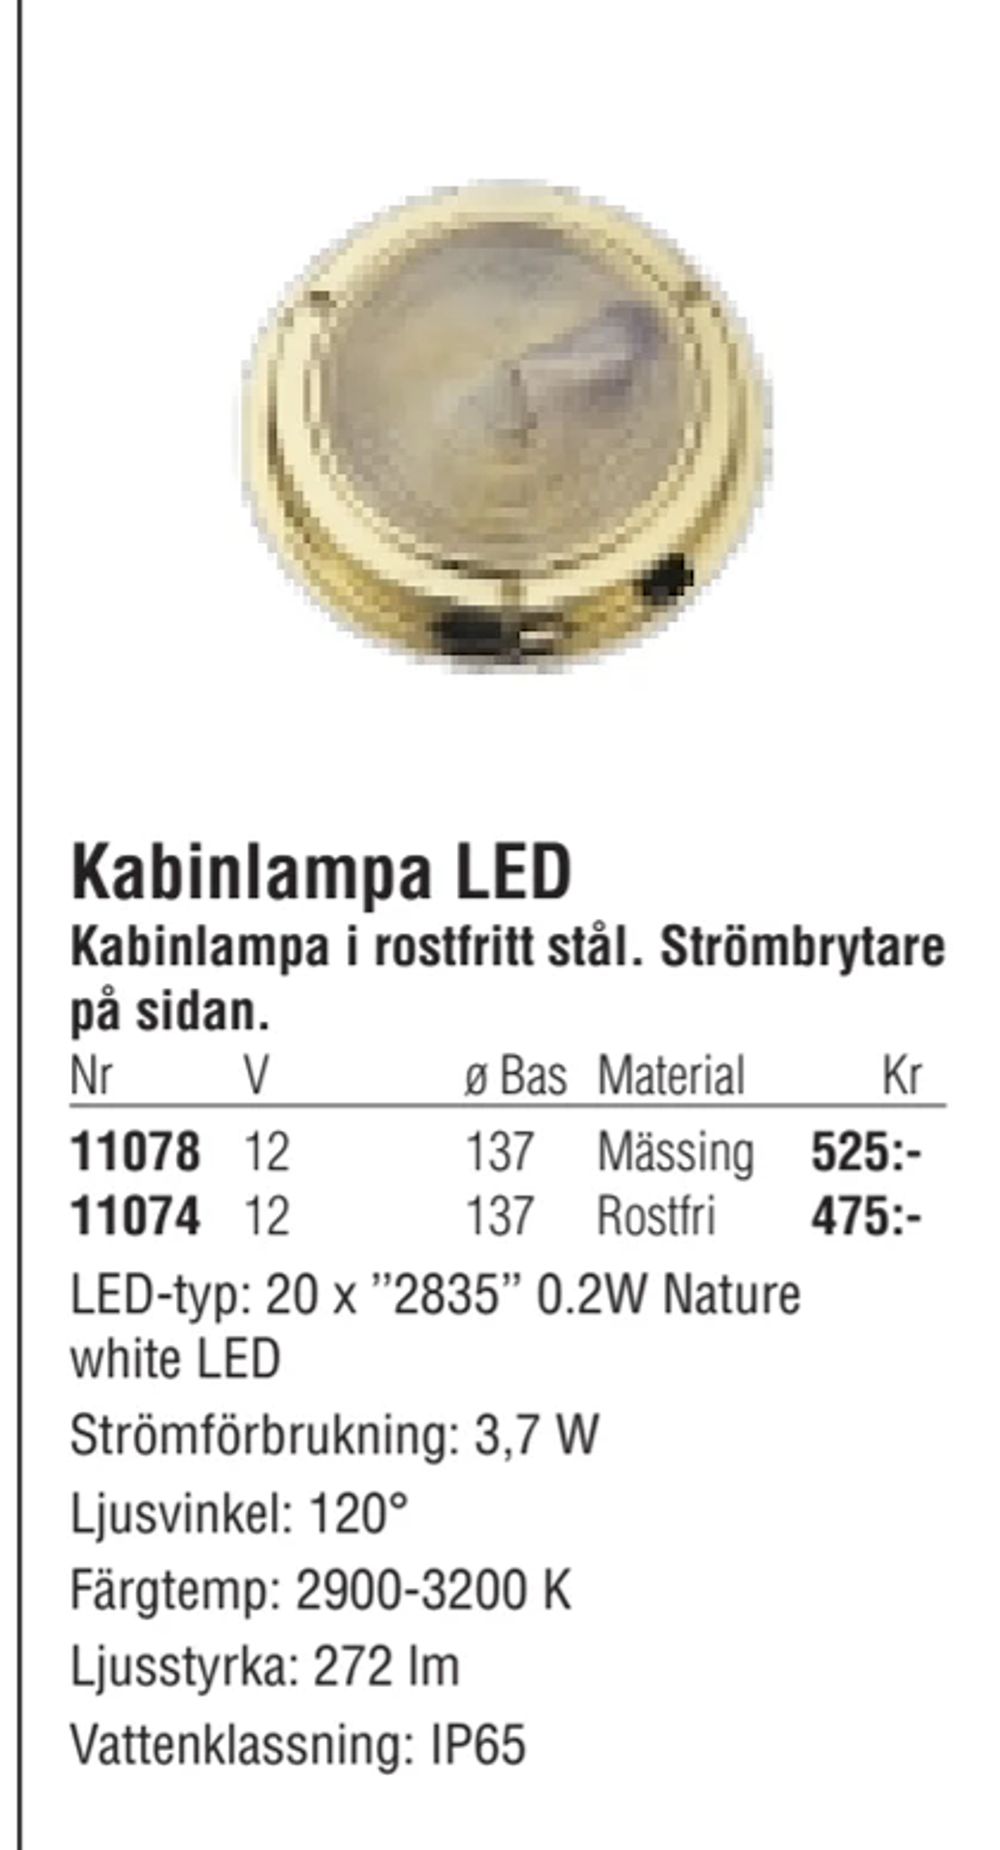 Erbjudanden på Kabinlampa LED från Erlandsons Brygga för 475 kr